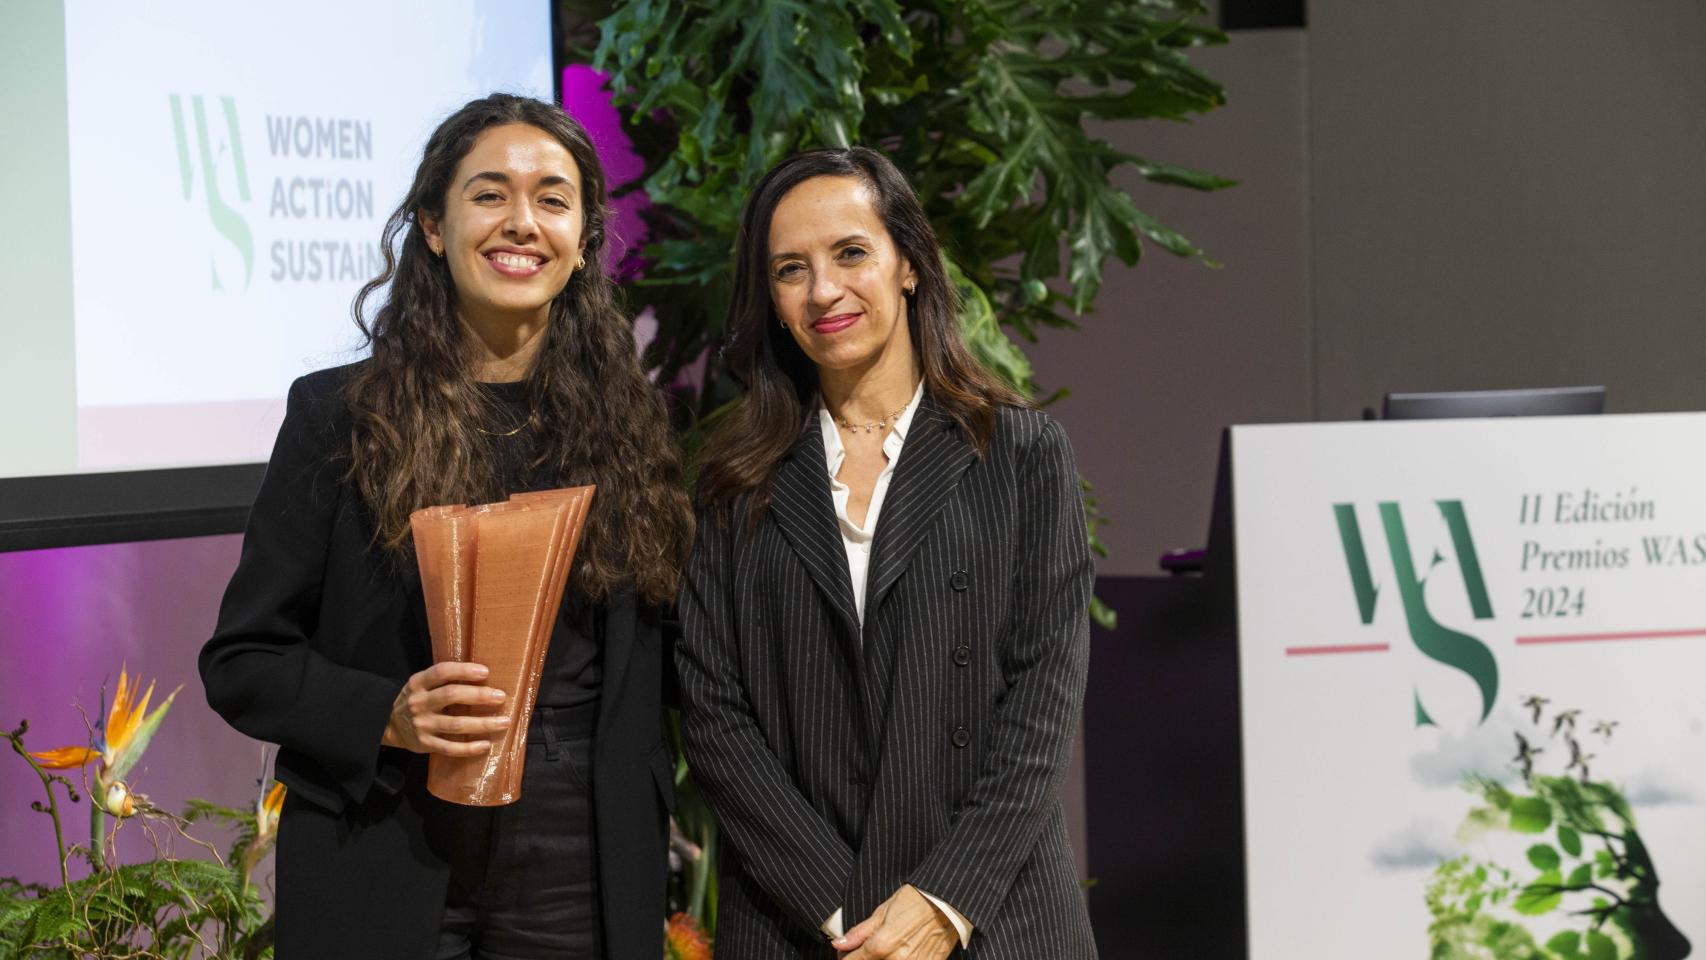 María González Manso, quien recibió el premio WAS en Ciencia e Innovación, junto a Beatriz Corredor, presidenta de Redeia.